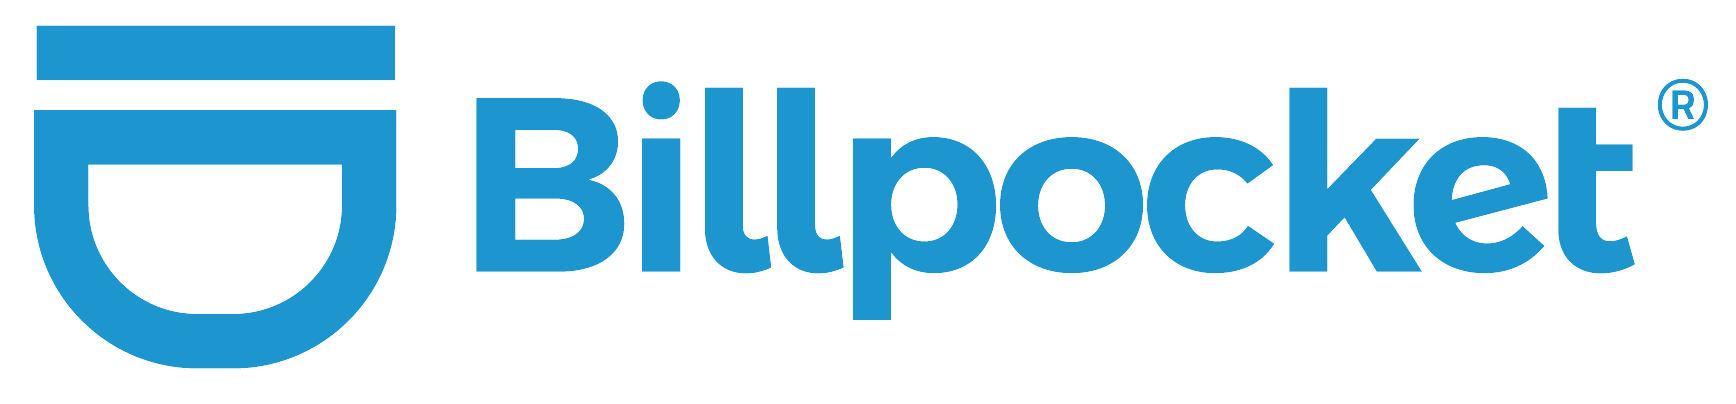 Billpocket logo